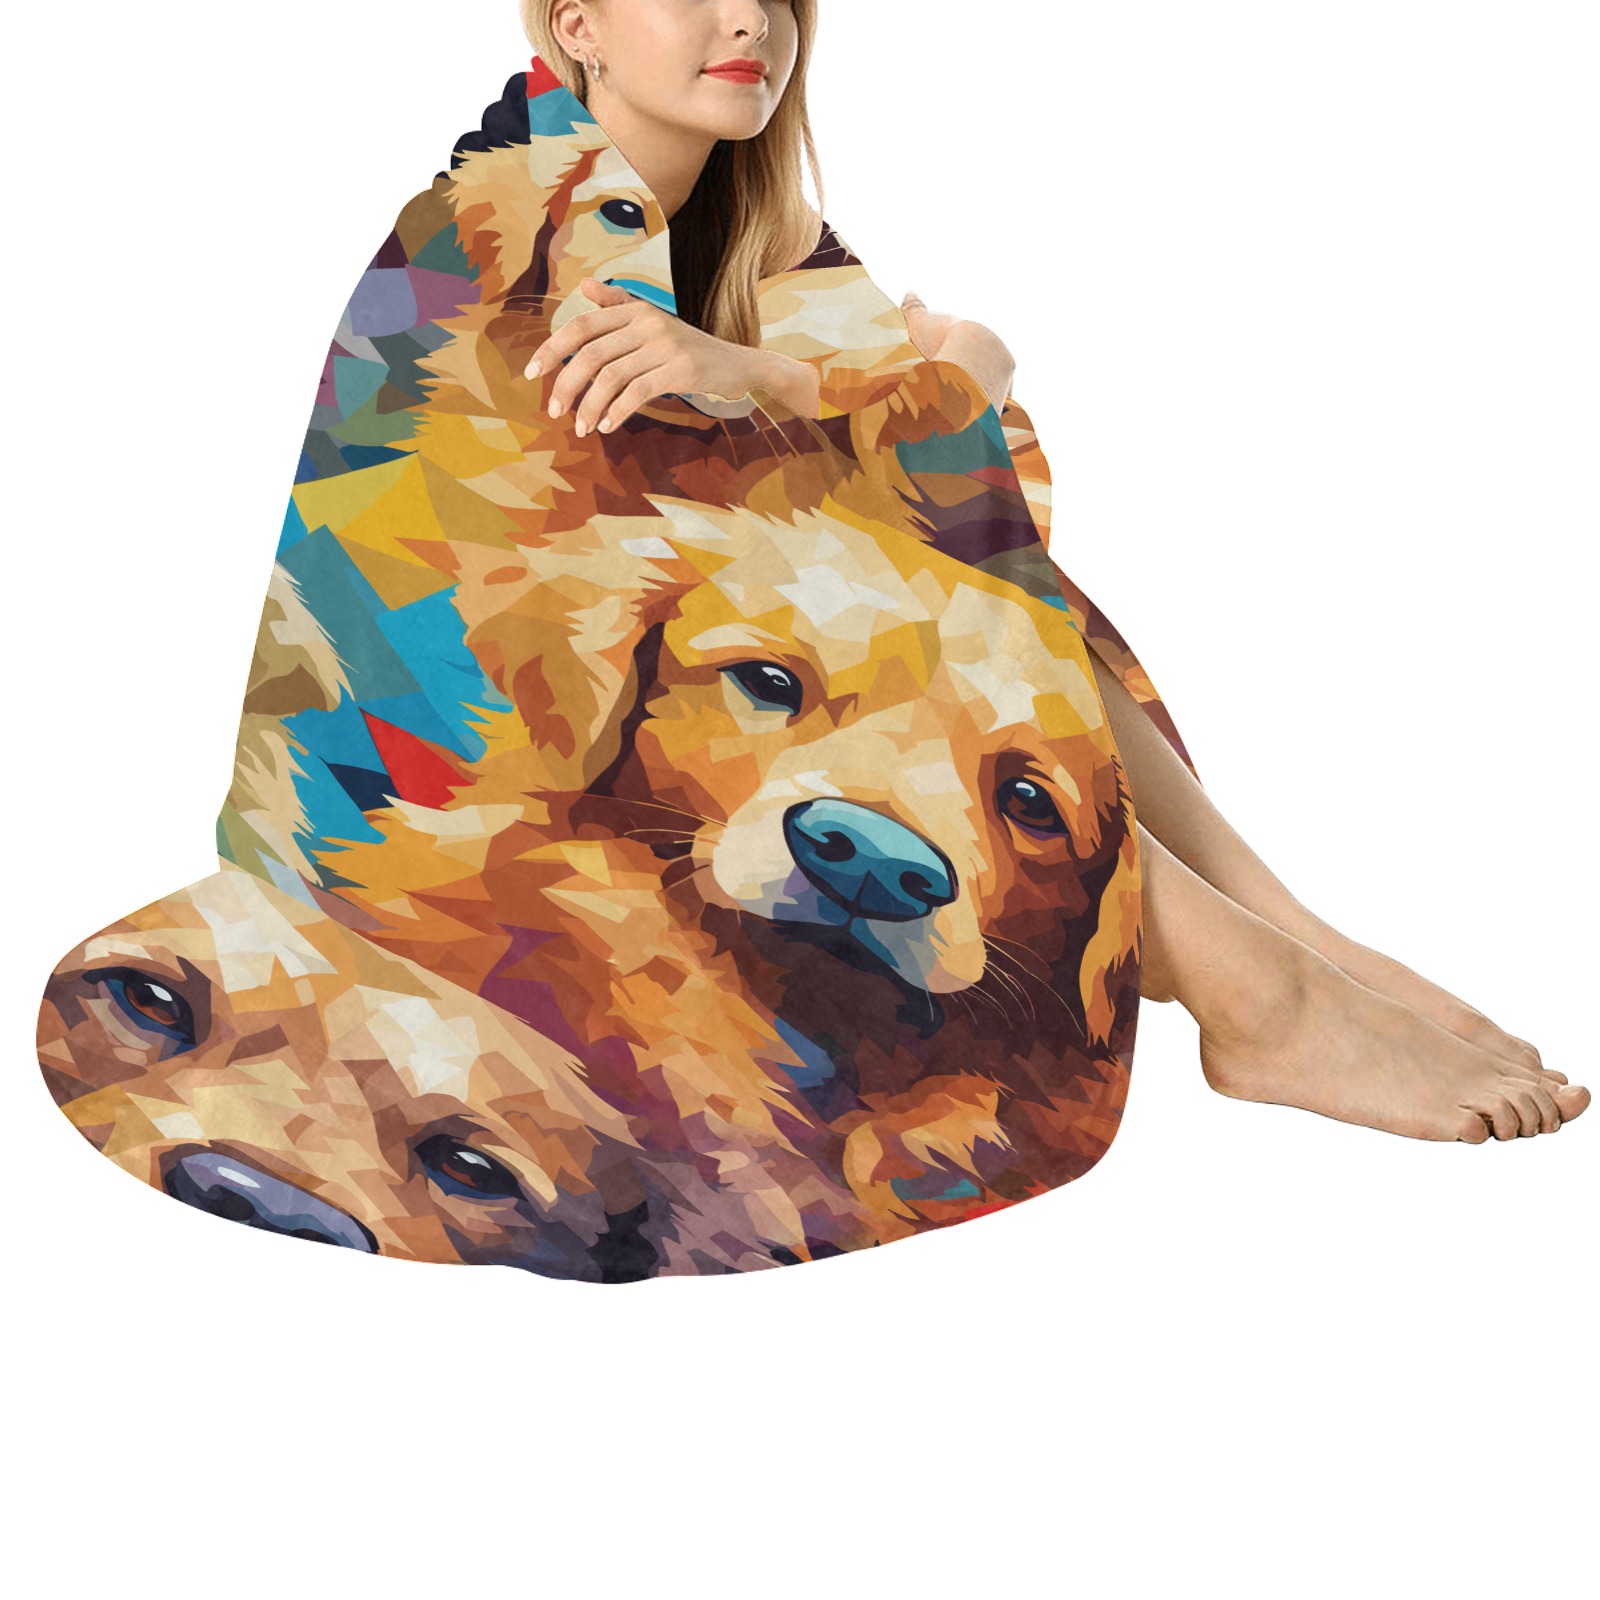 Texture of golden retriever dogs, digital art. Circular Ultra-Soft Micro Fleece Blanket 60"